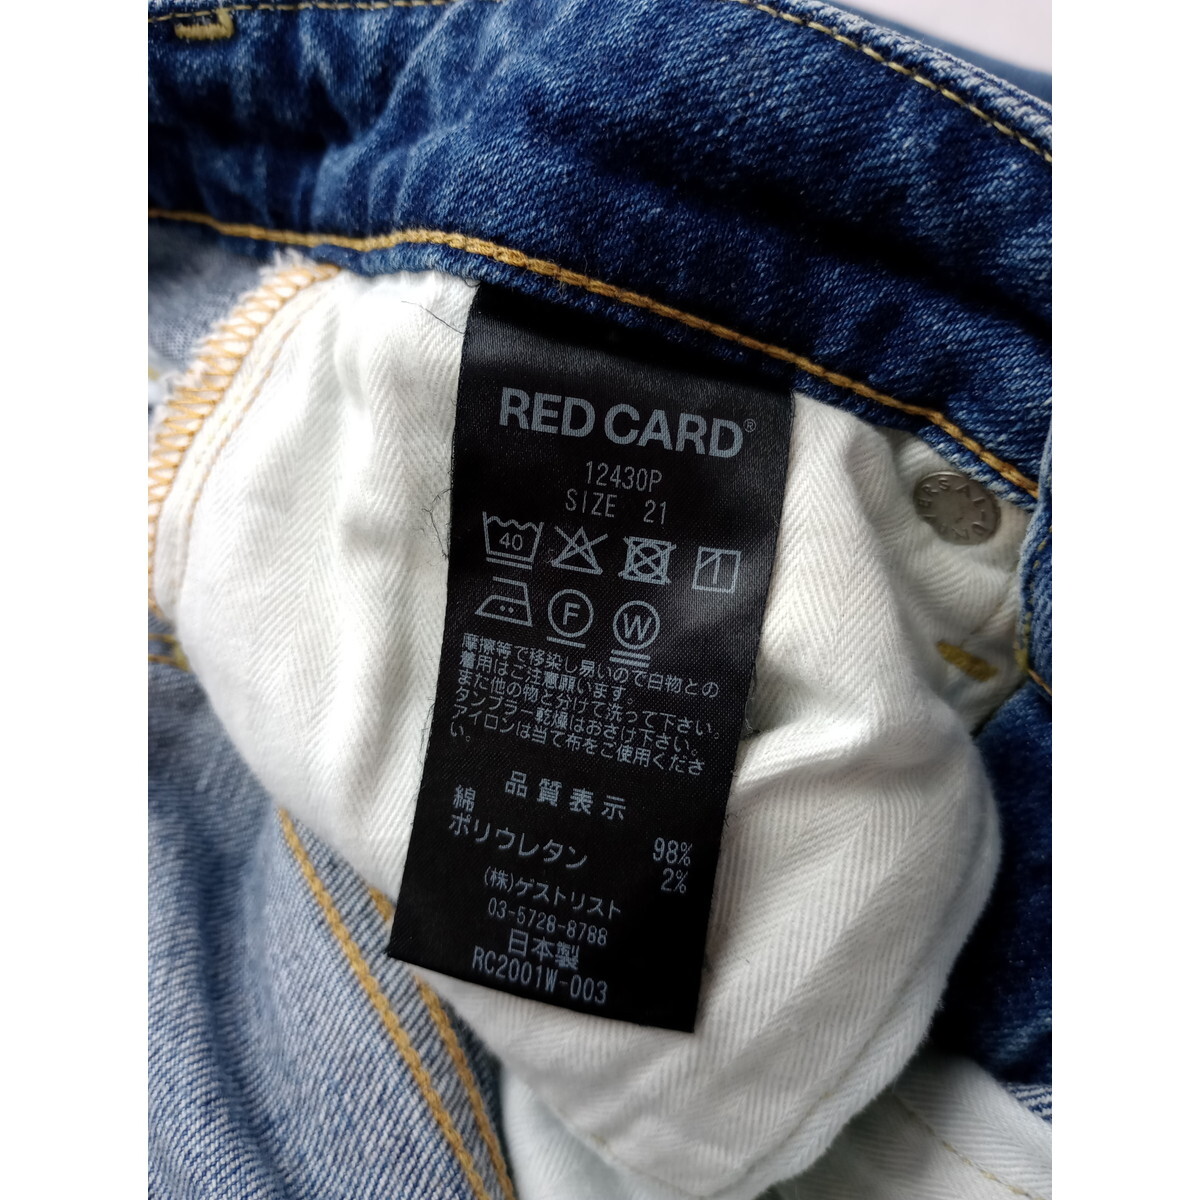 RED CARD レッドカード「わたしの普段着をグレードアップさせよう♪」コットン 綿混 デニム テーパードパンツ 日本製 21 ブルー (57Y+0333)_画像6